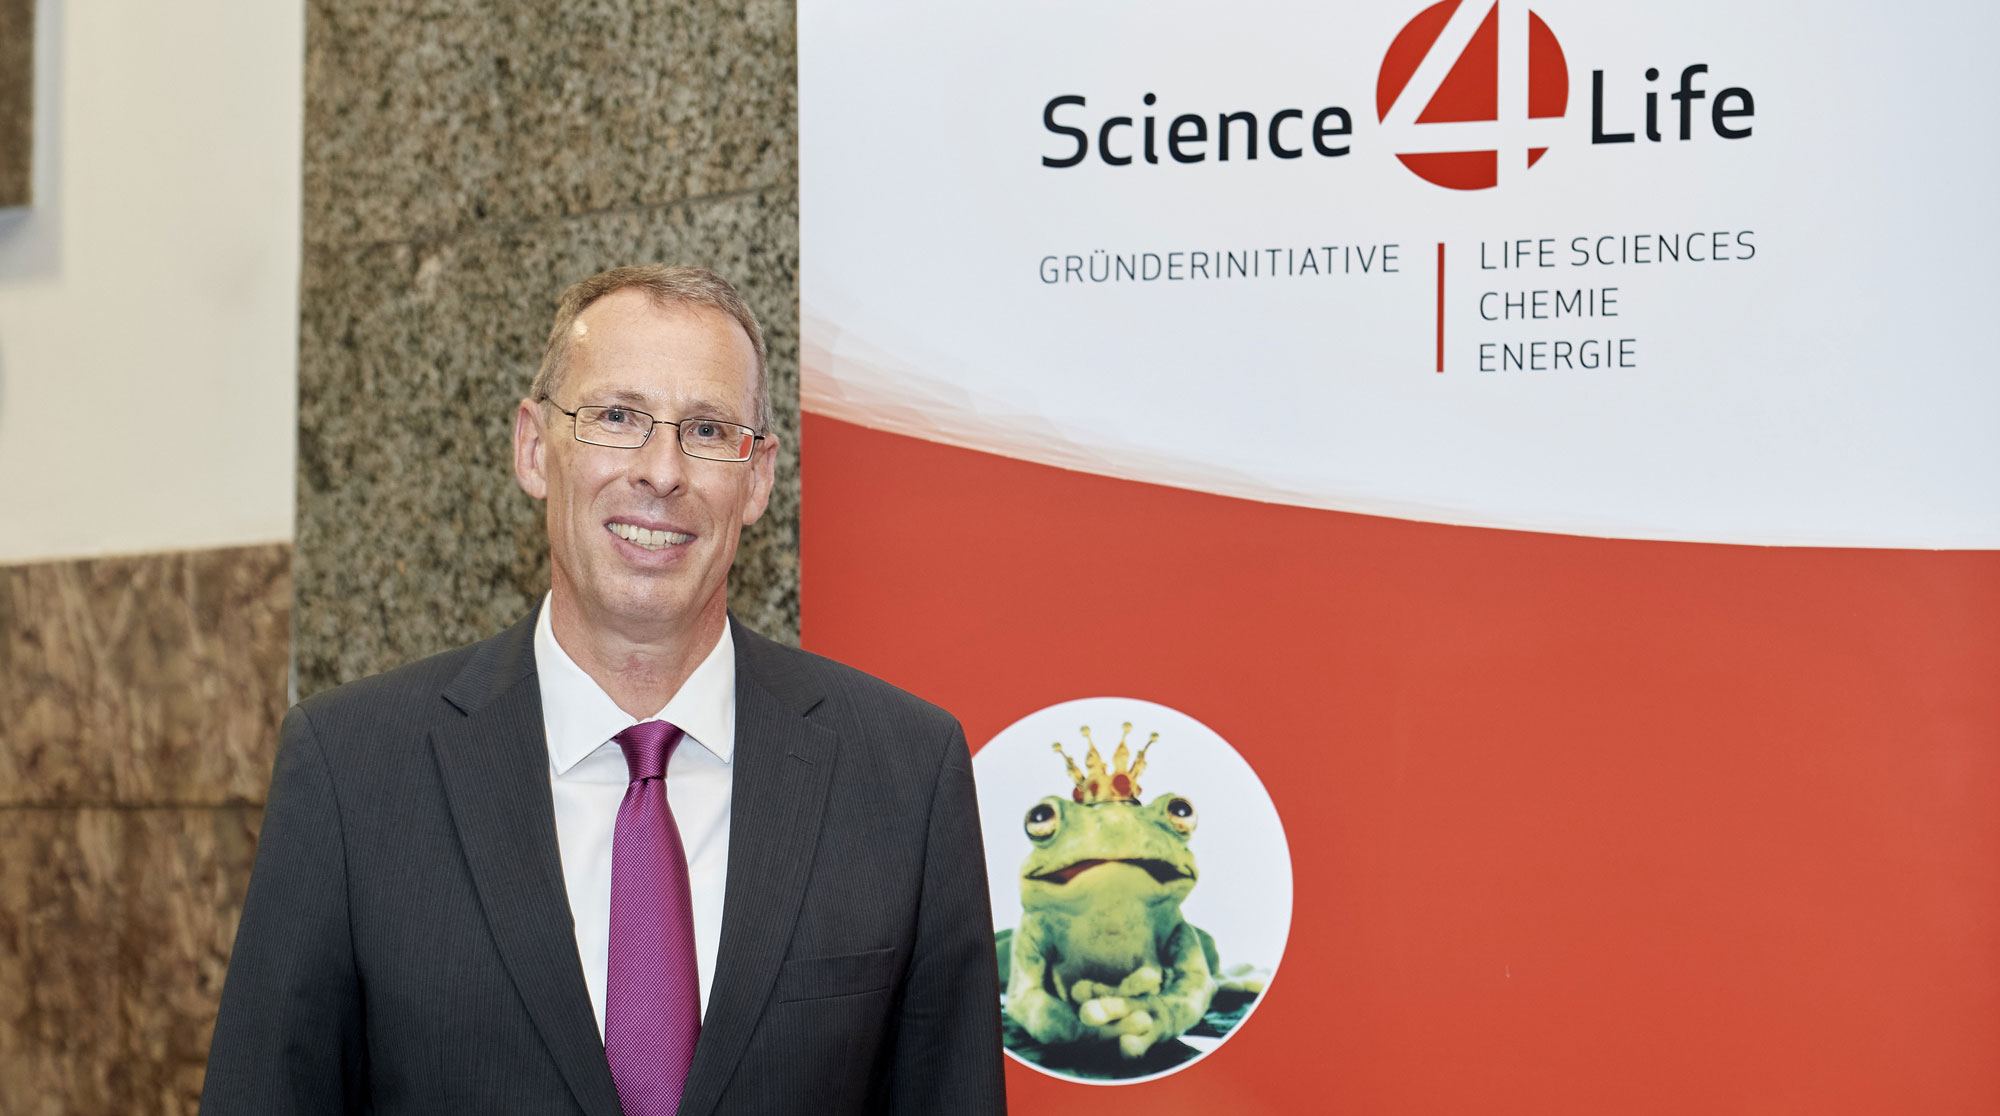 Dr. Lutz Müller, Projektleiter Science4Life, Businessplan Wettbewerb Life Sciences, Chemie, Energie